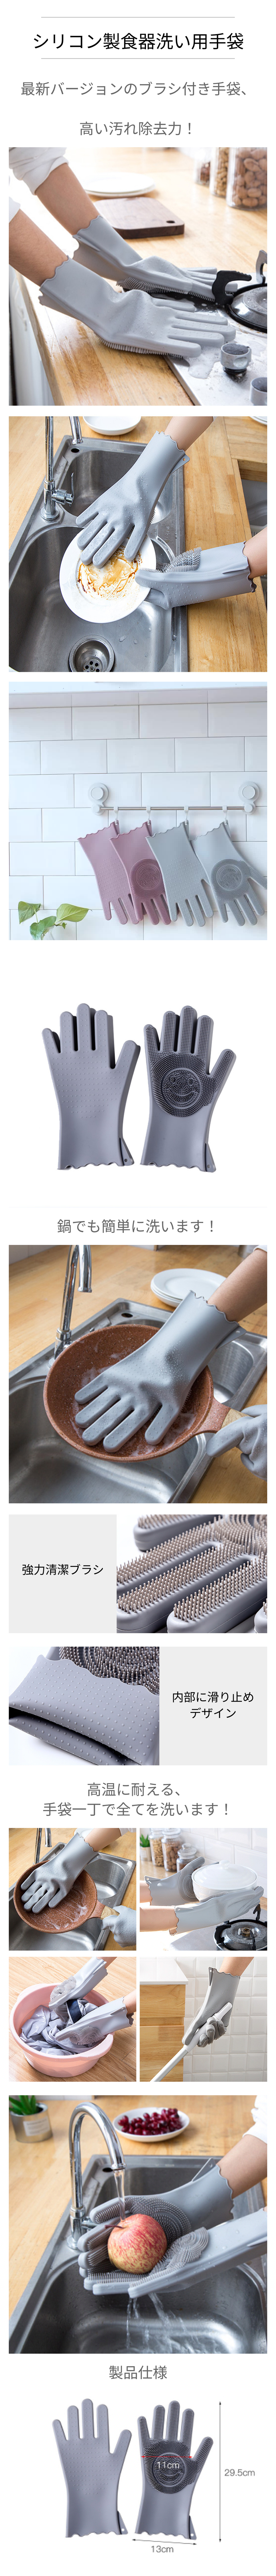 シリコン製食器洗い用手袋.png